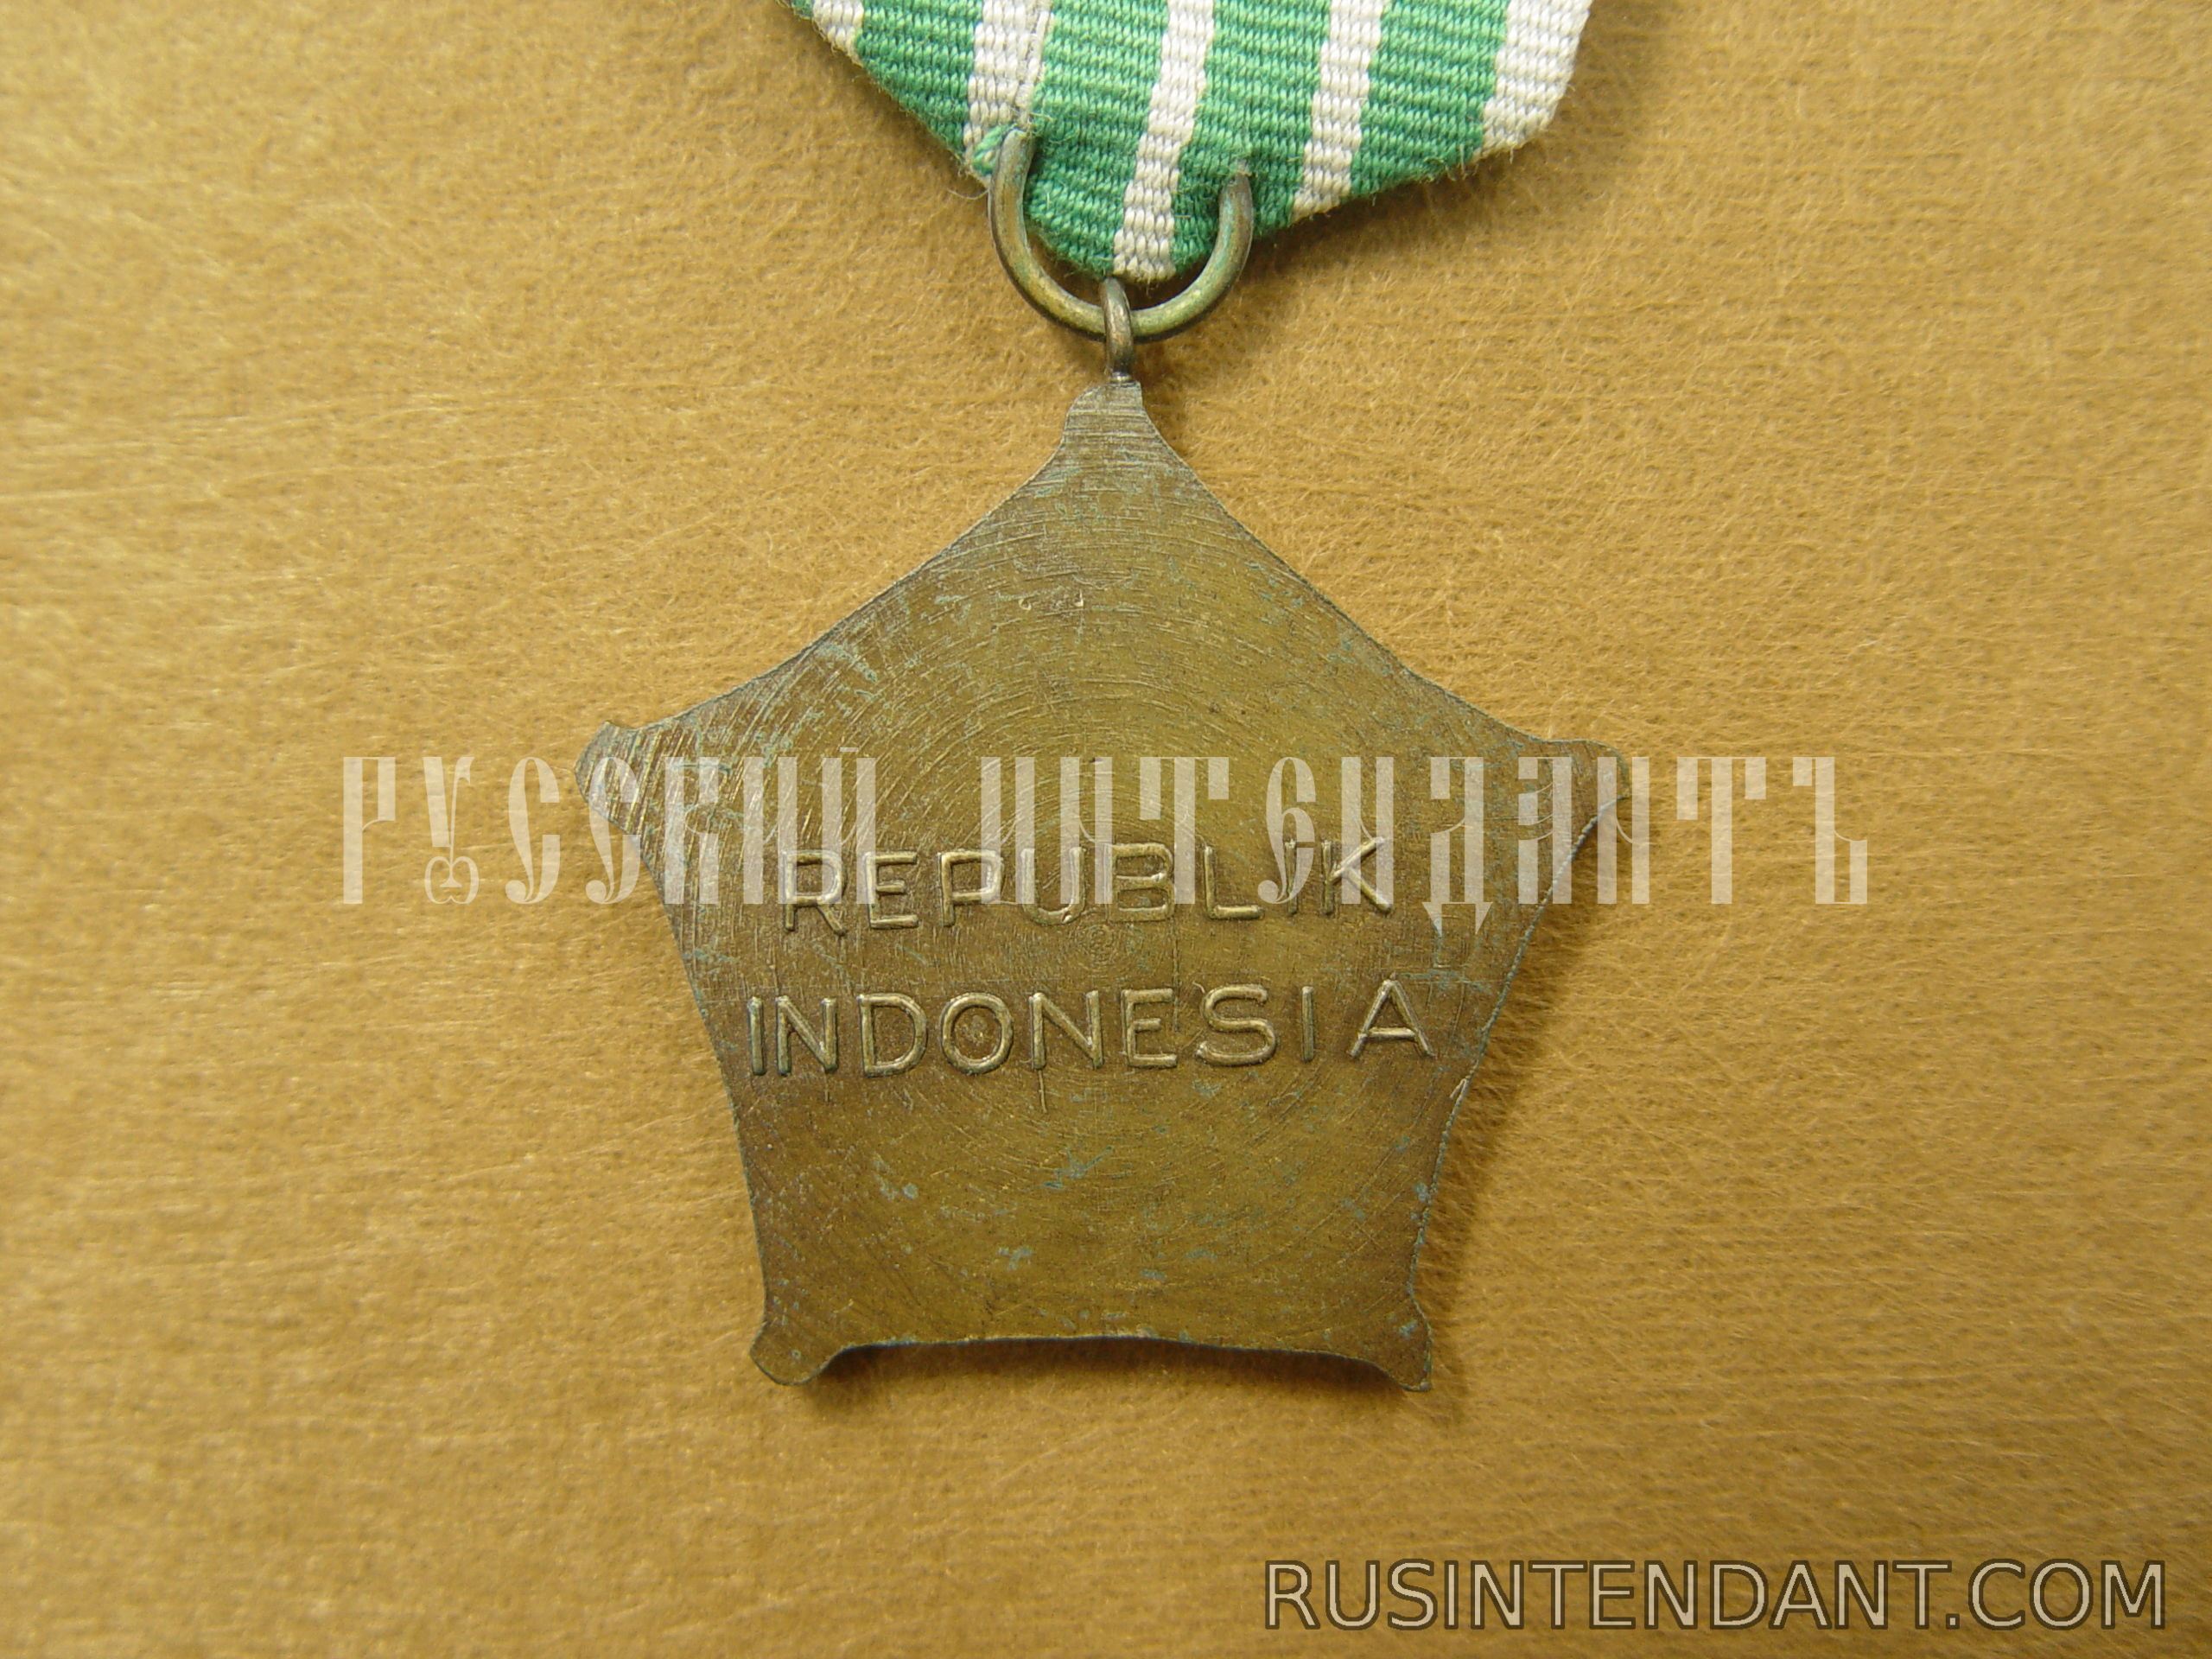 Фото 4: Военная медаль "За операцию Ириан-Джая" 